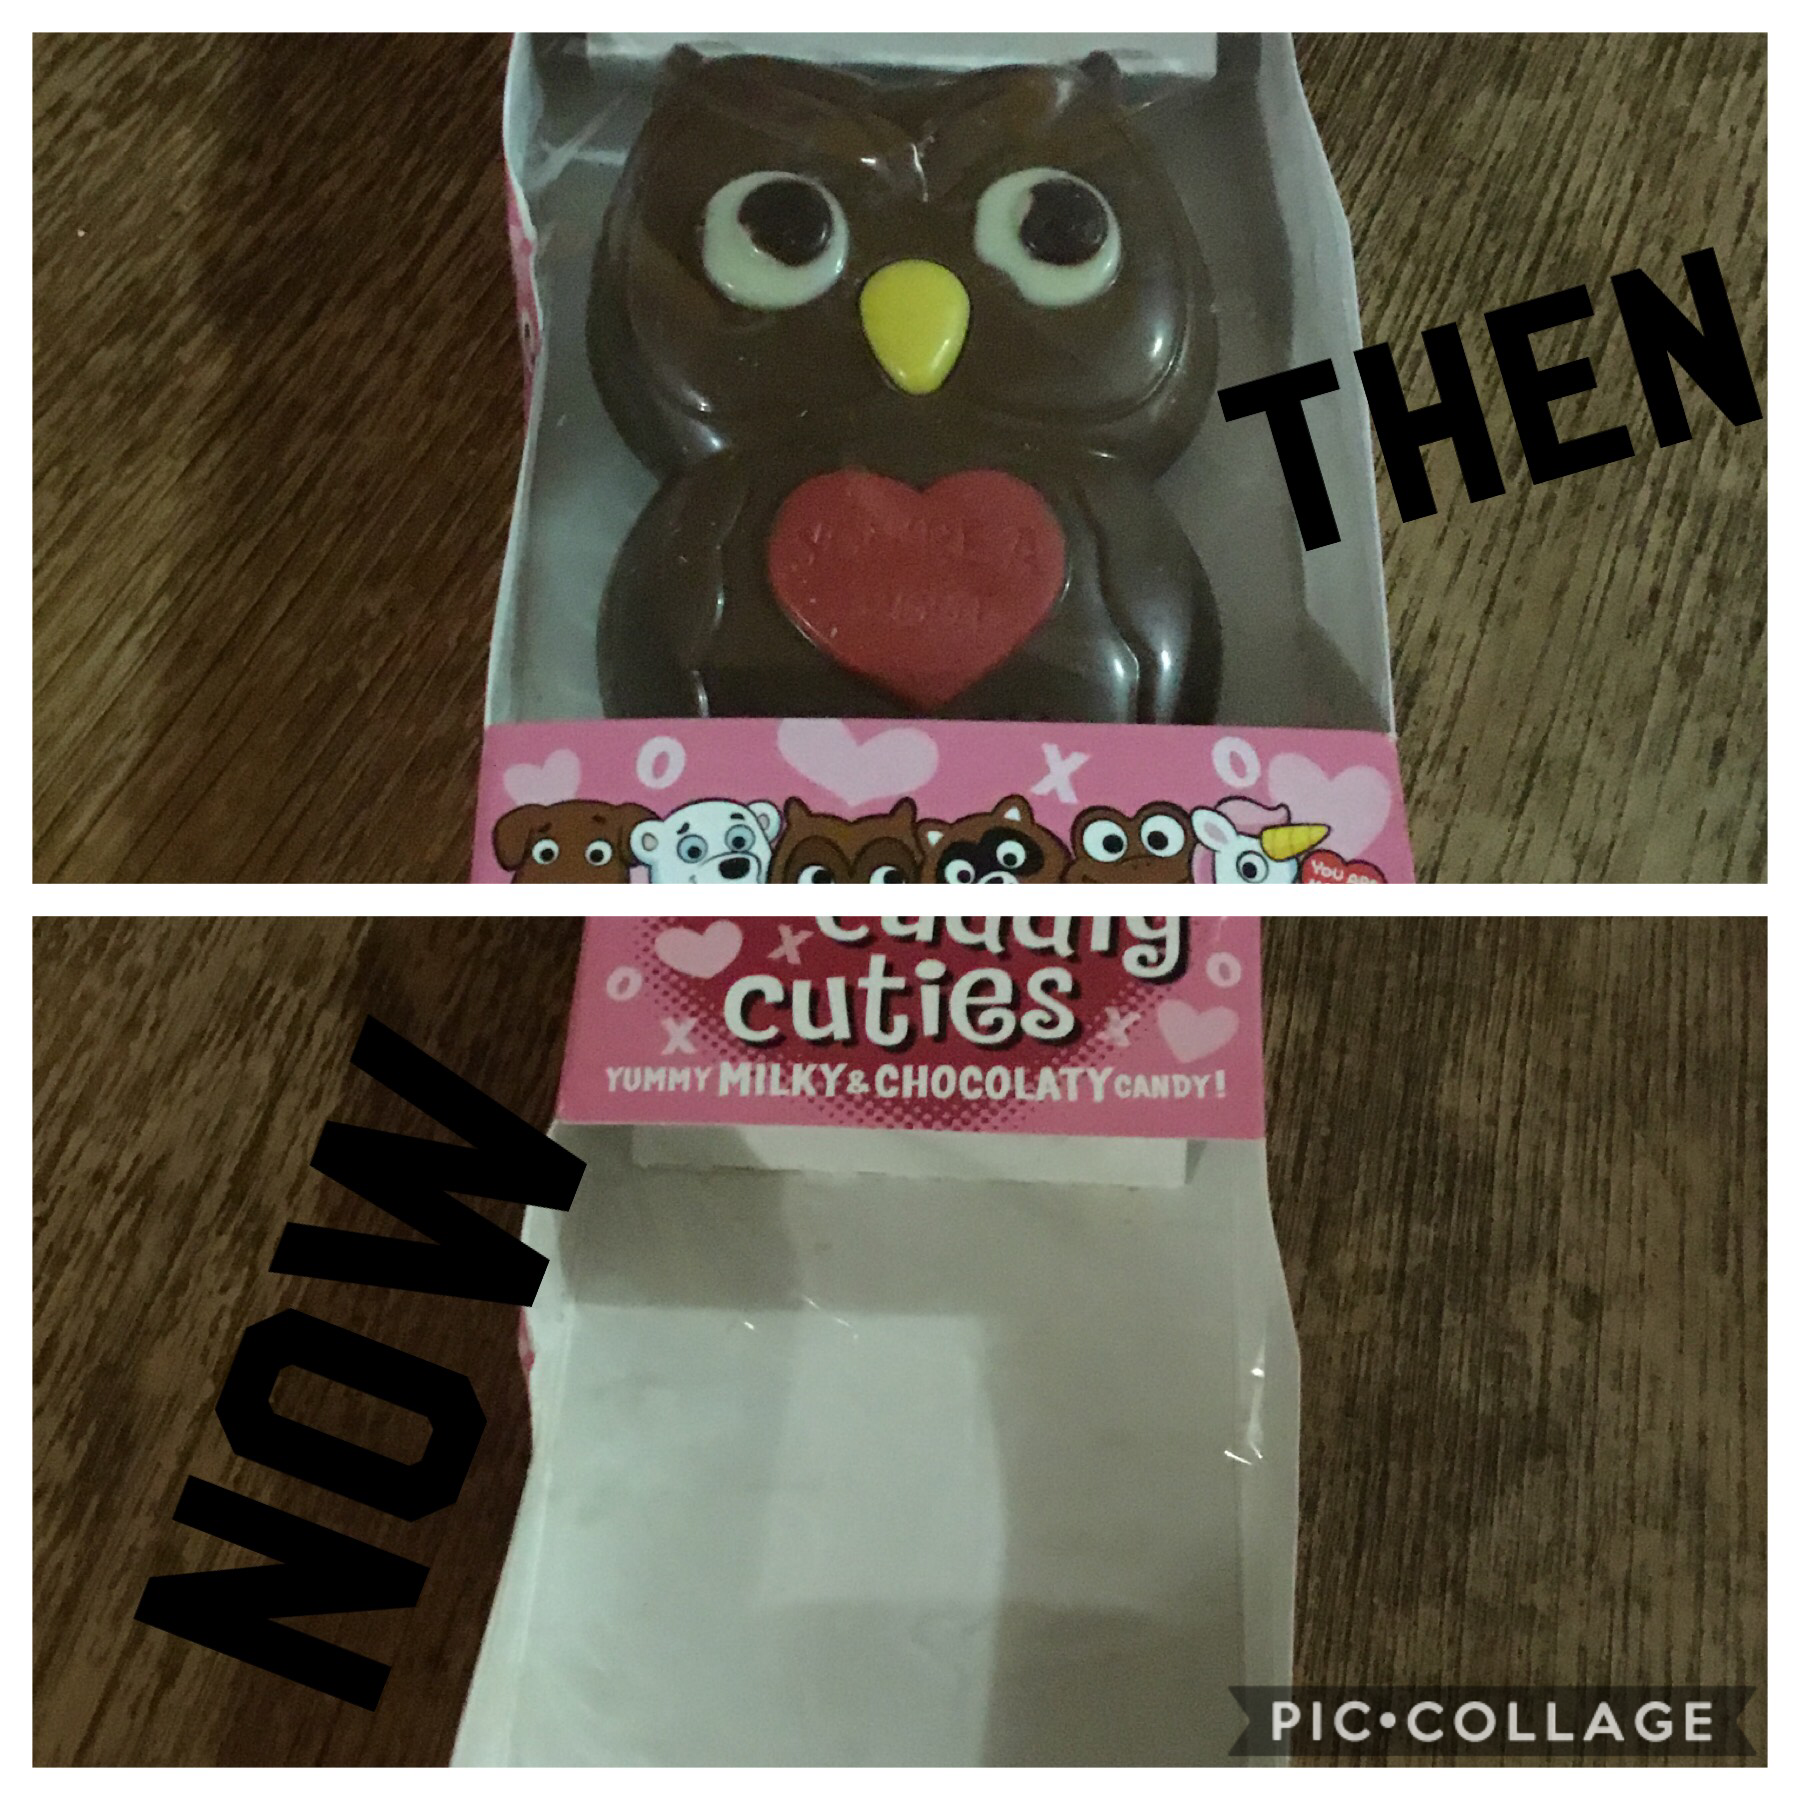 Rip chocolate owl